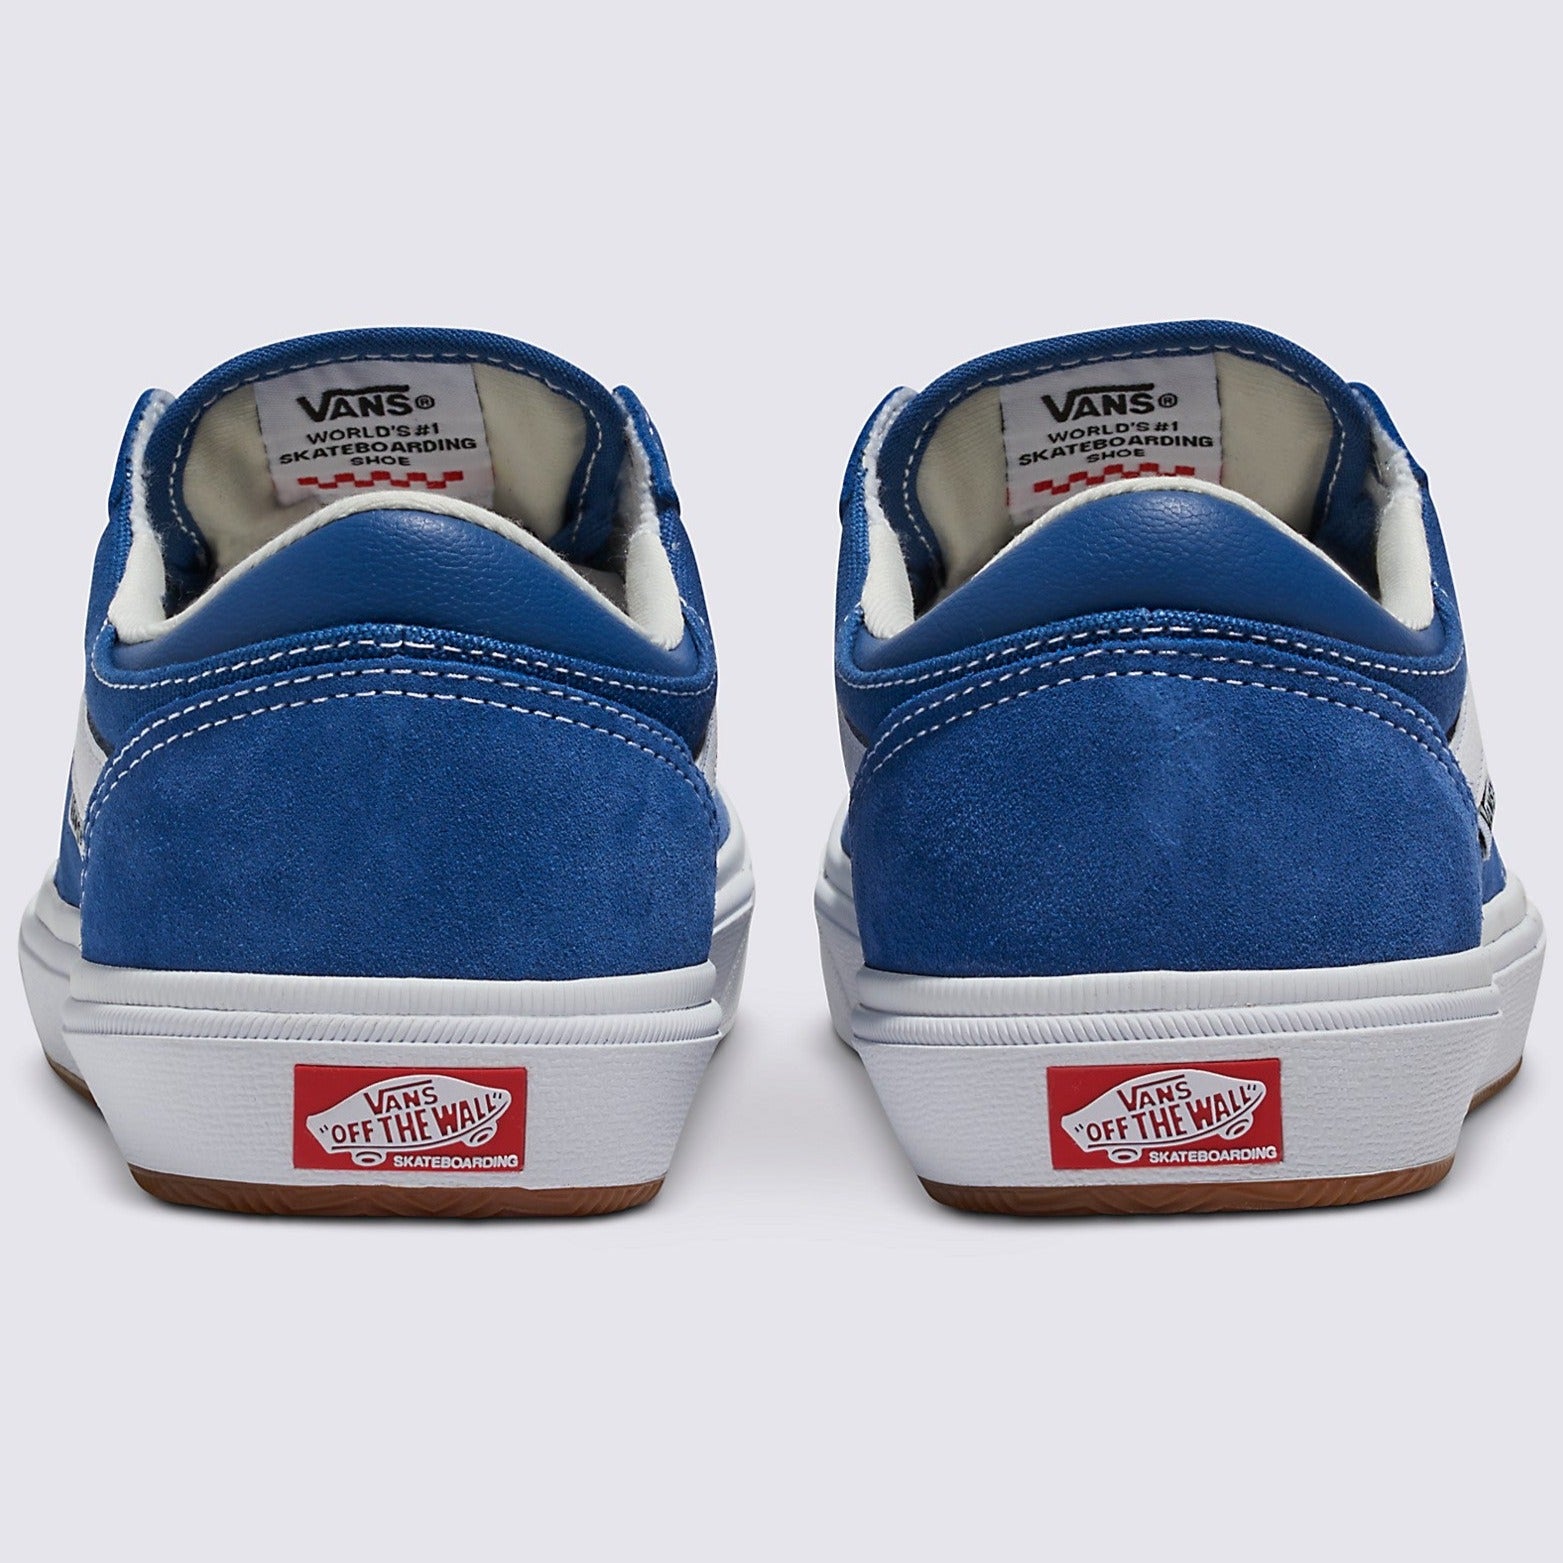 Blue/White Gilbert Crockett Vans Skate Shoe Back